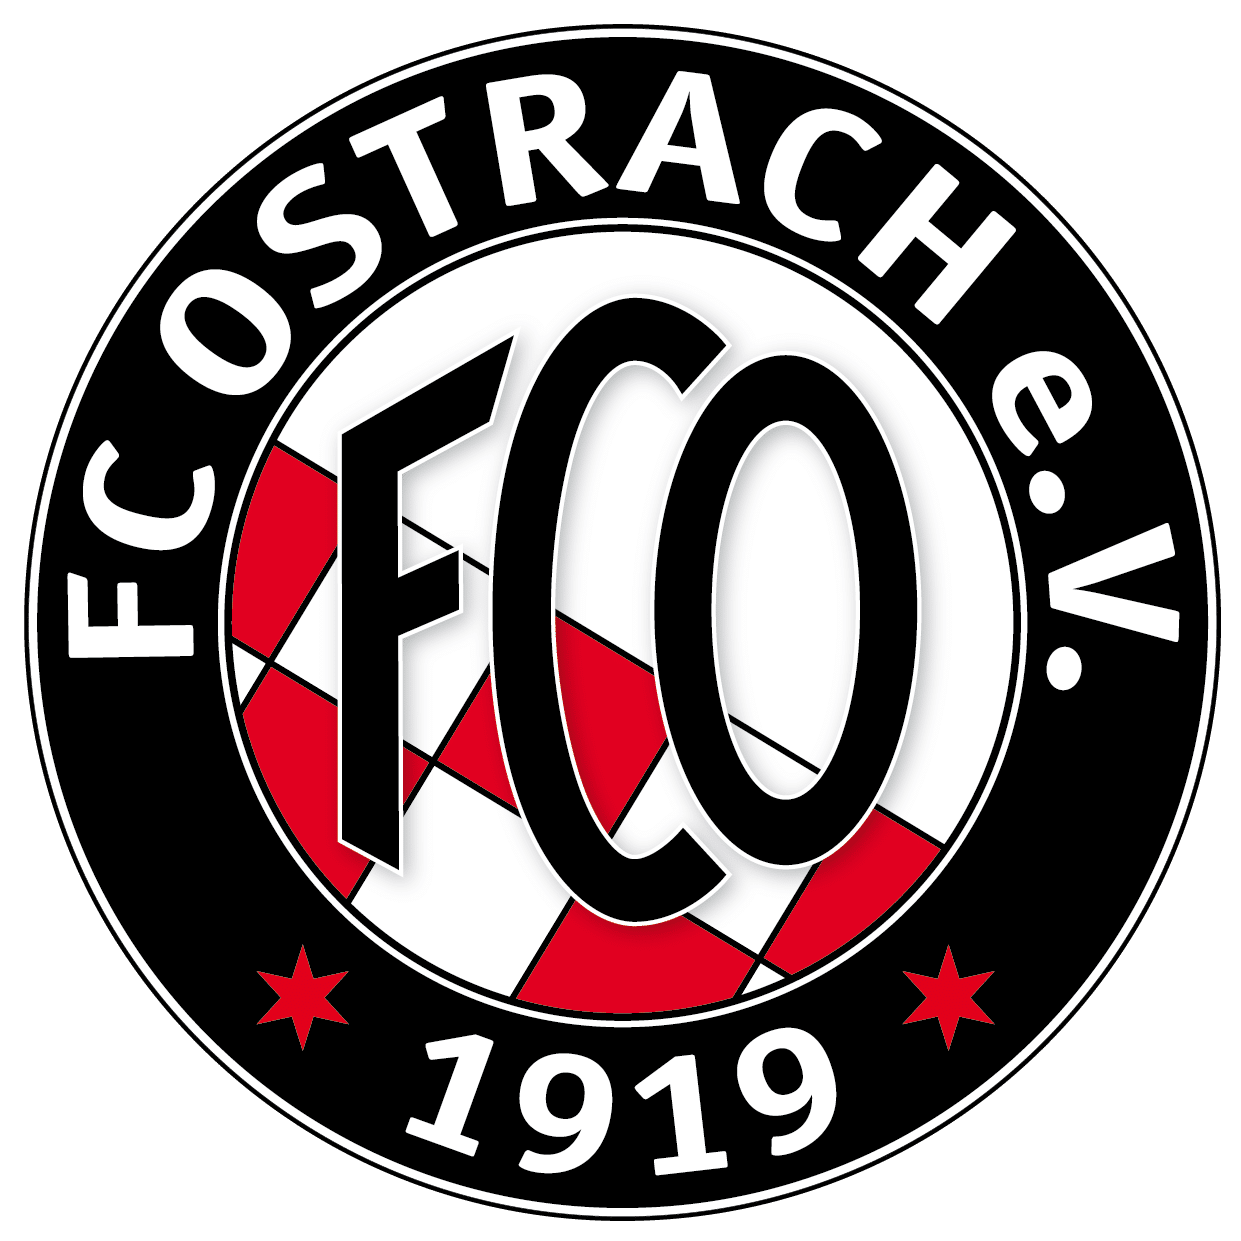 (c) Fcostrach.de